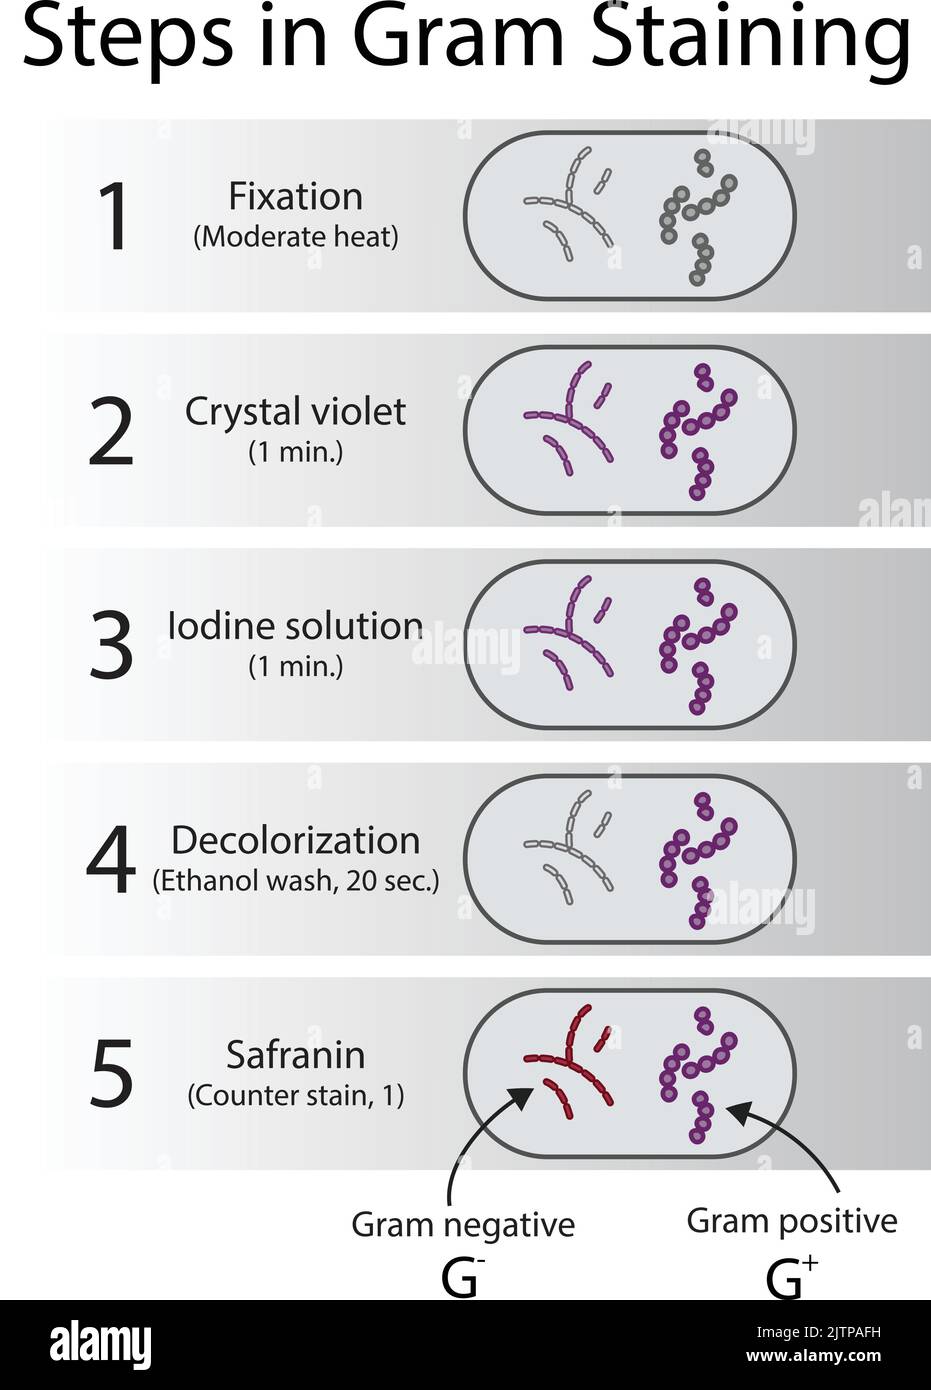 Diagramma che mostra le fasi tecniche del laboratorio di microbiologia con colorazione a grammo - laboratorio di microbiologia con violetto cristallino e Safranin Illustrazione Vettoriale